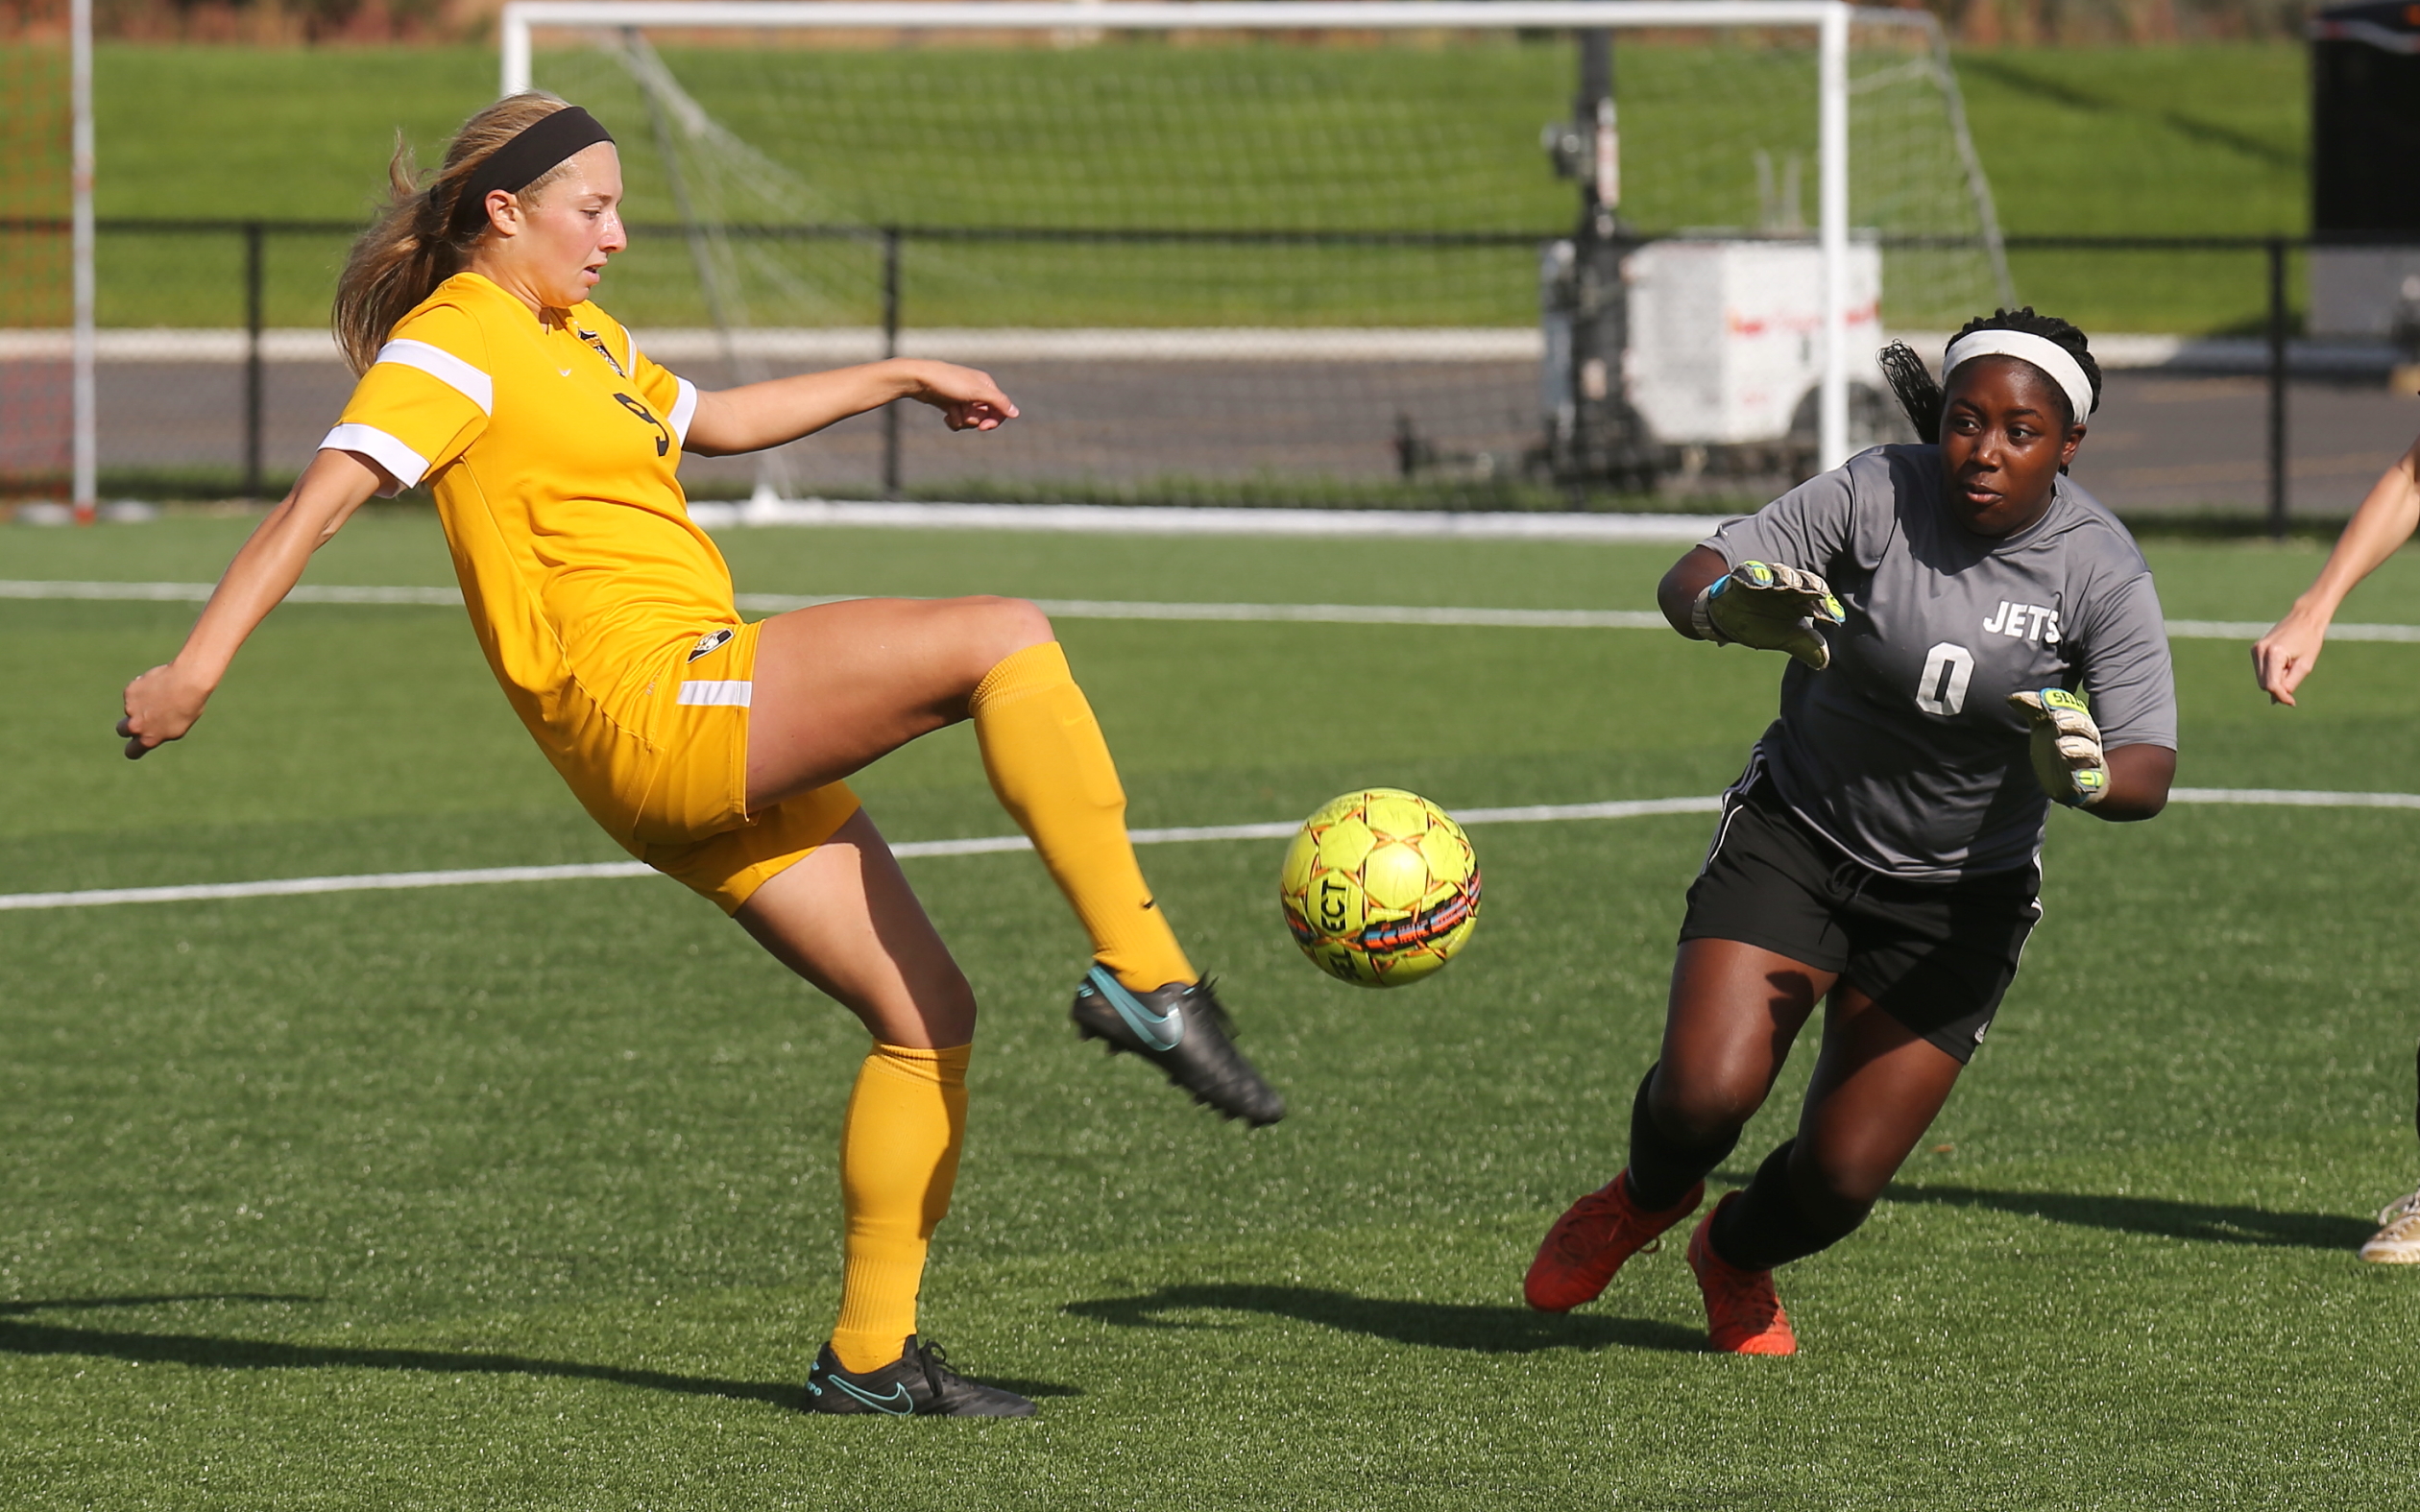 Female soccer player kicking toward goal